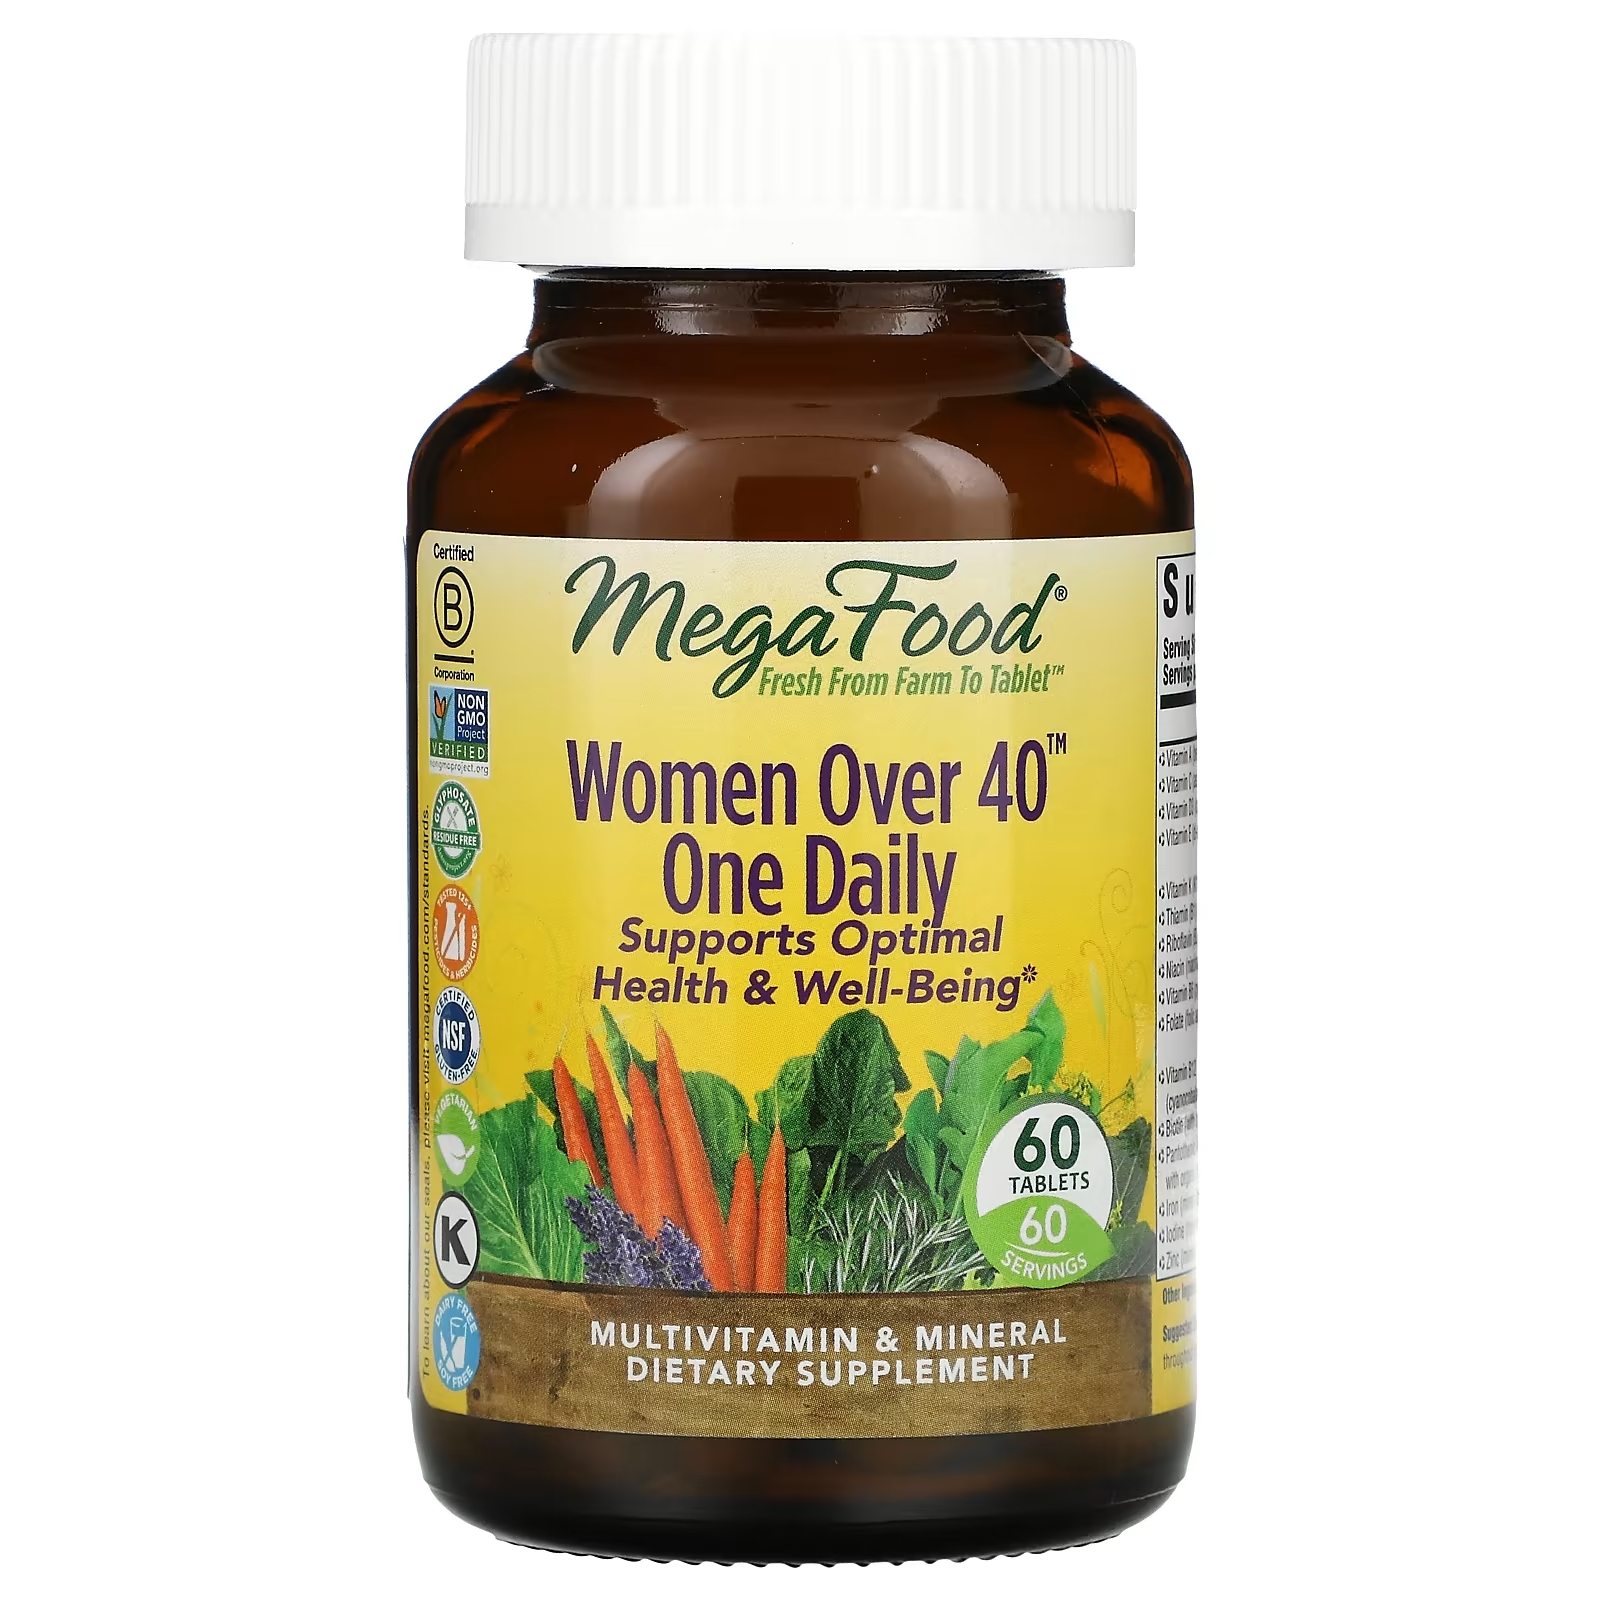 Мультивитамины для Женщин Старше 40 лет MegaFood, 60 таблеток kal мультивитамины для женщин старше 50 лет утром и вечером 2 пакетика 60 таблеток в каждом